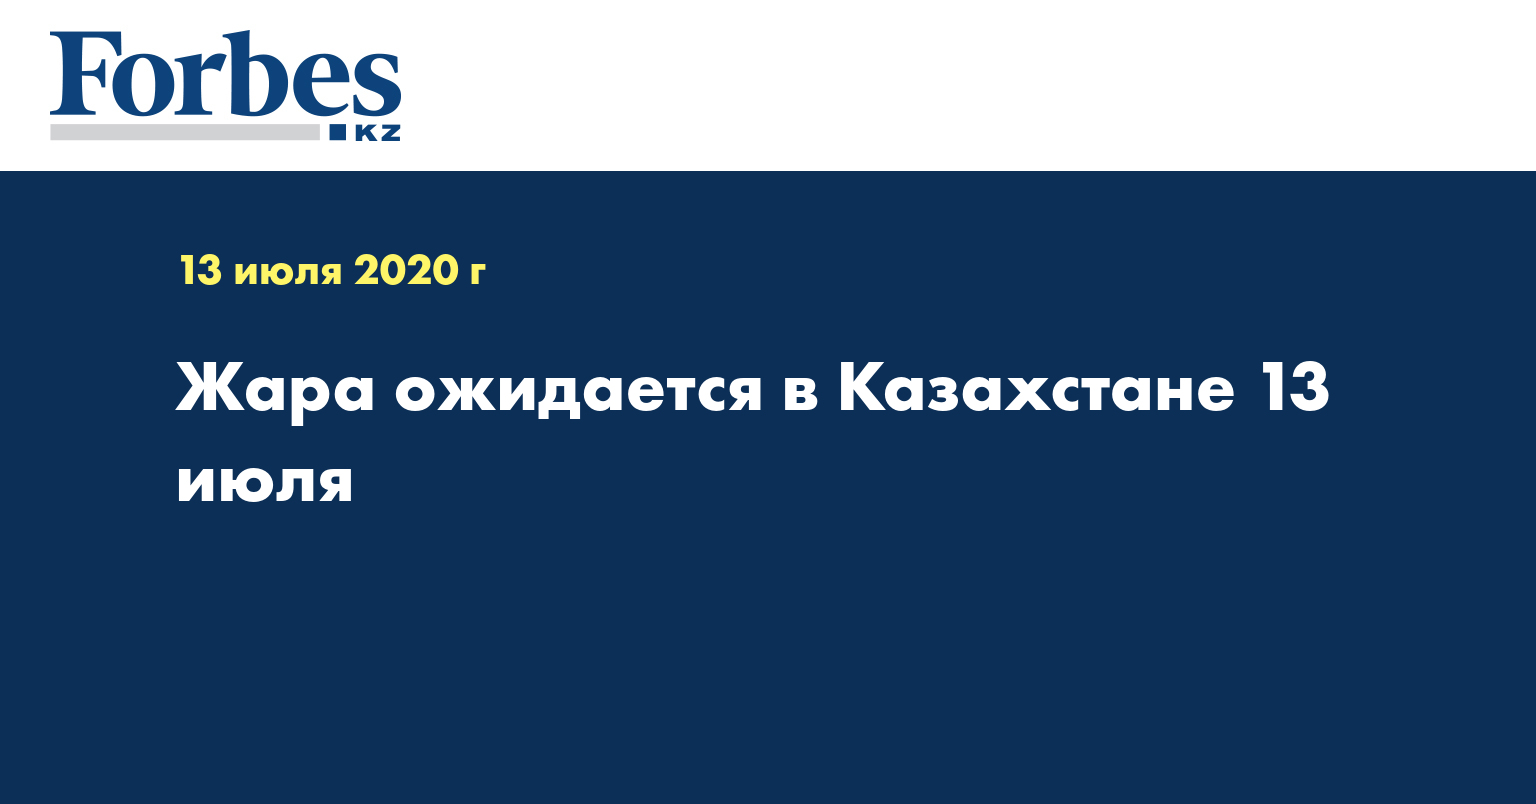  Жара ожидается в Казахстане 13 июля